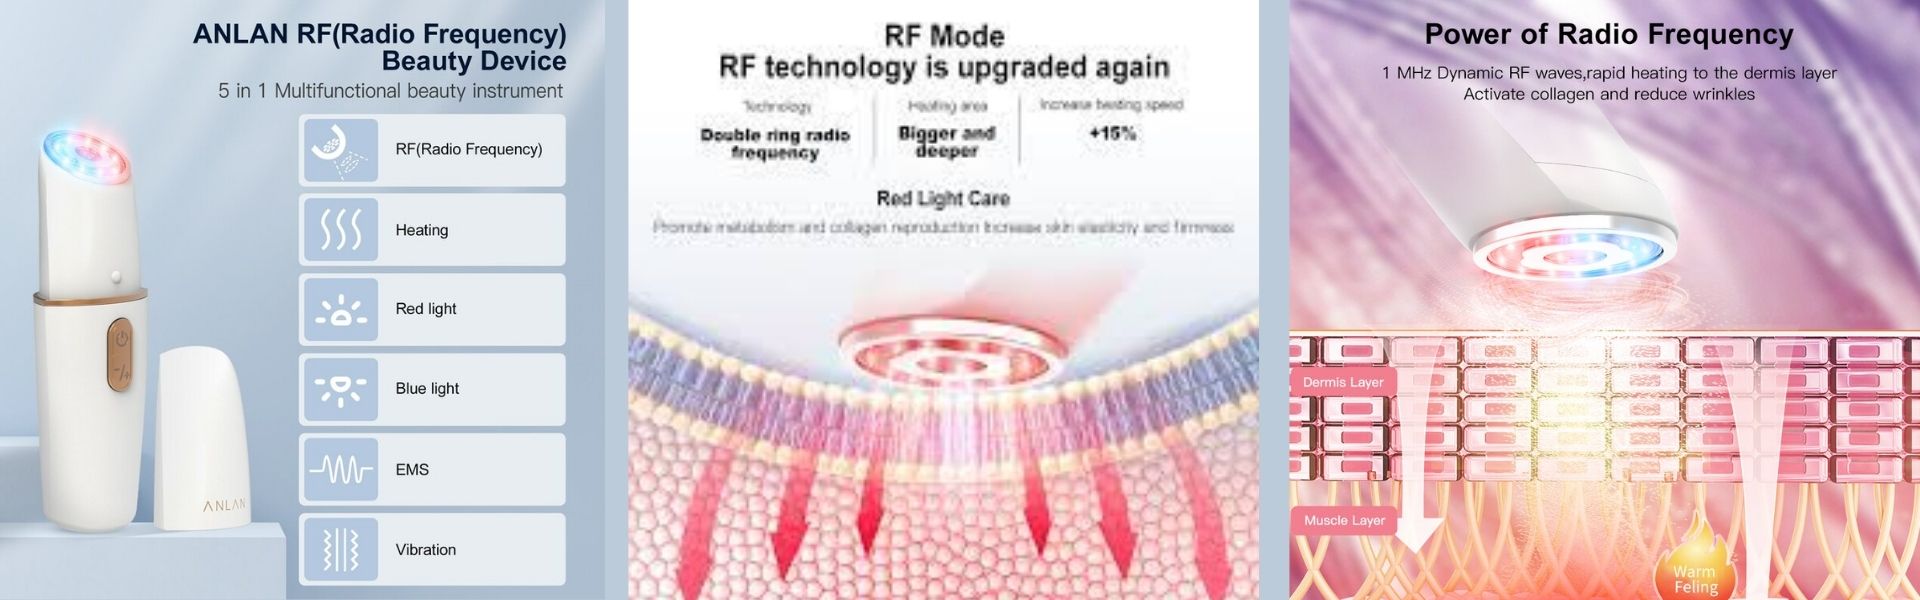 Máy nâng cơ chăm sóc da mặt ANLAN 6 trong 1 công nghệ tần số RF EMS và Mesotherapy